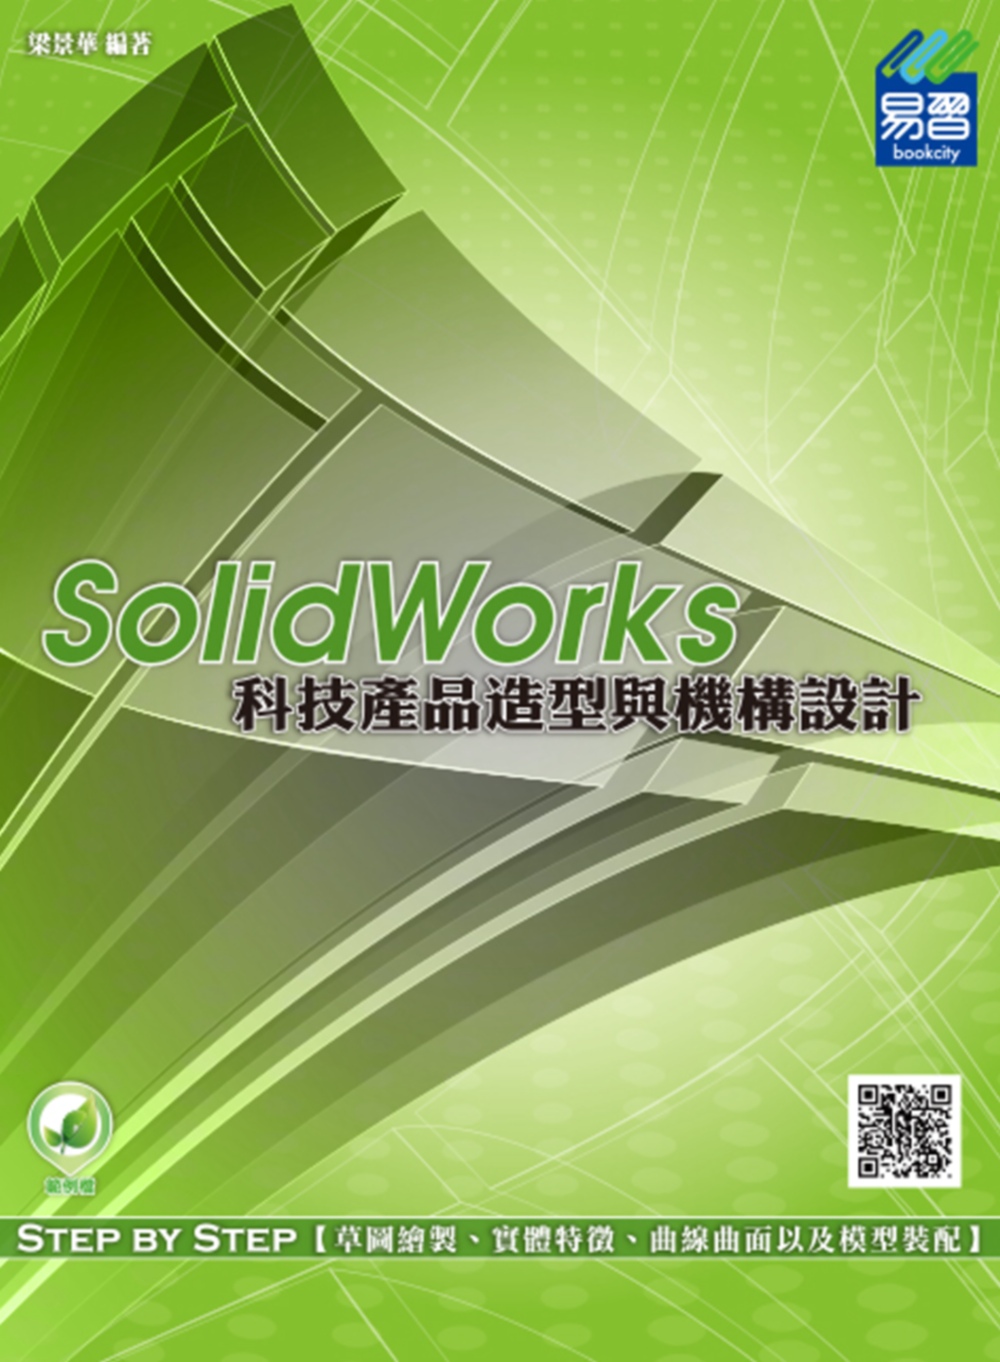 SolidWorks 科技產品造...